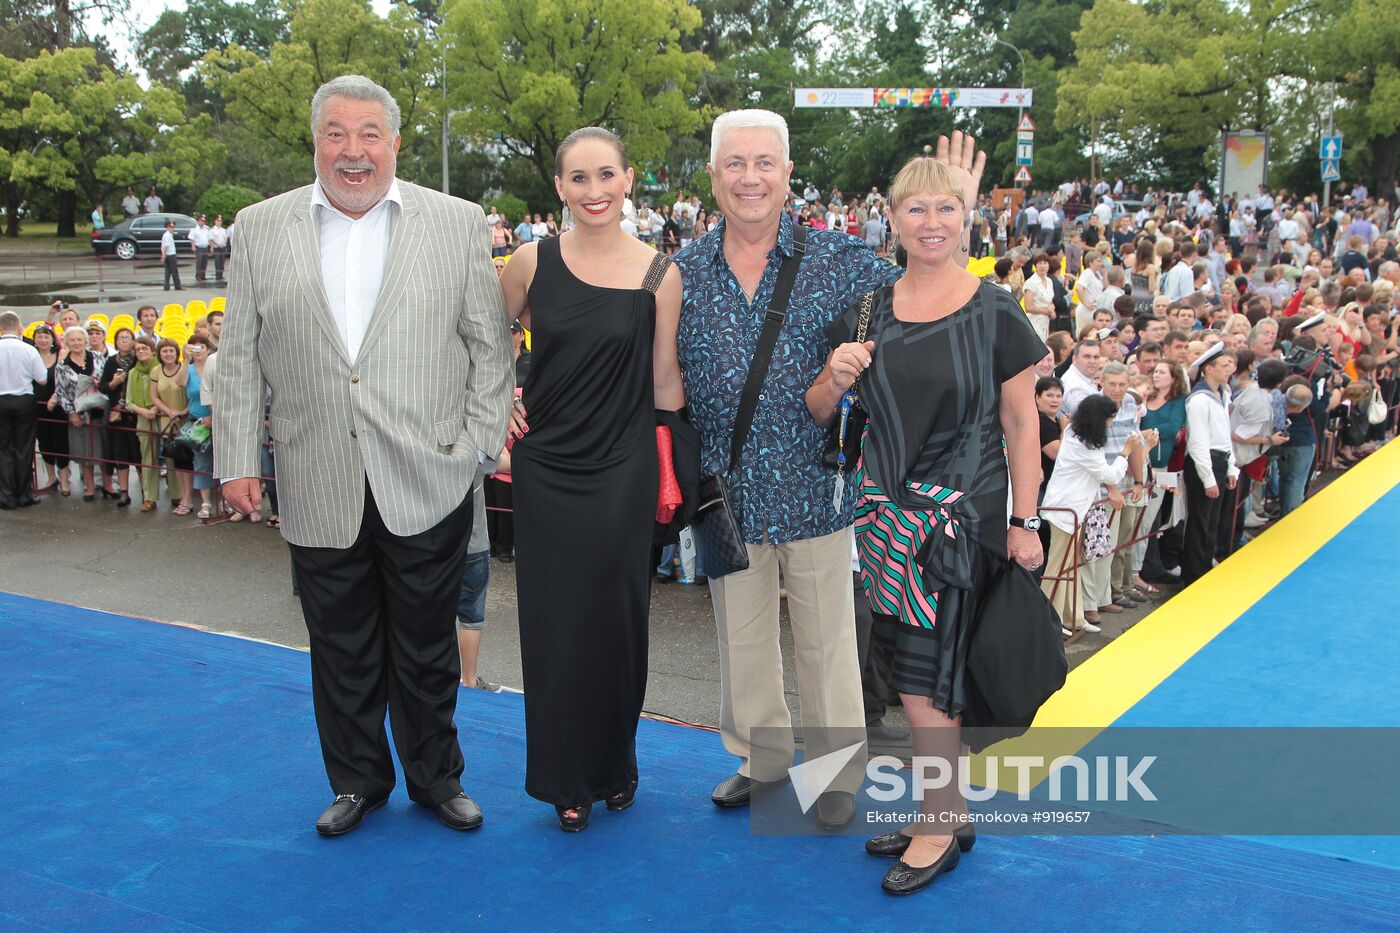 Yuli Gusman and Vladimir Vinokur with families